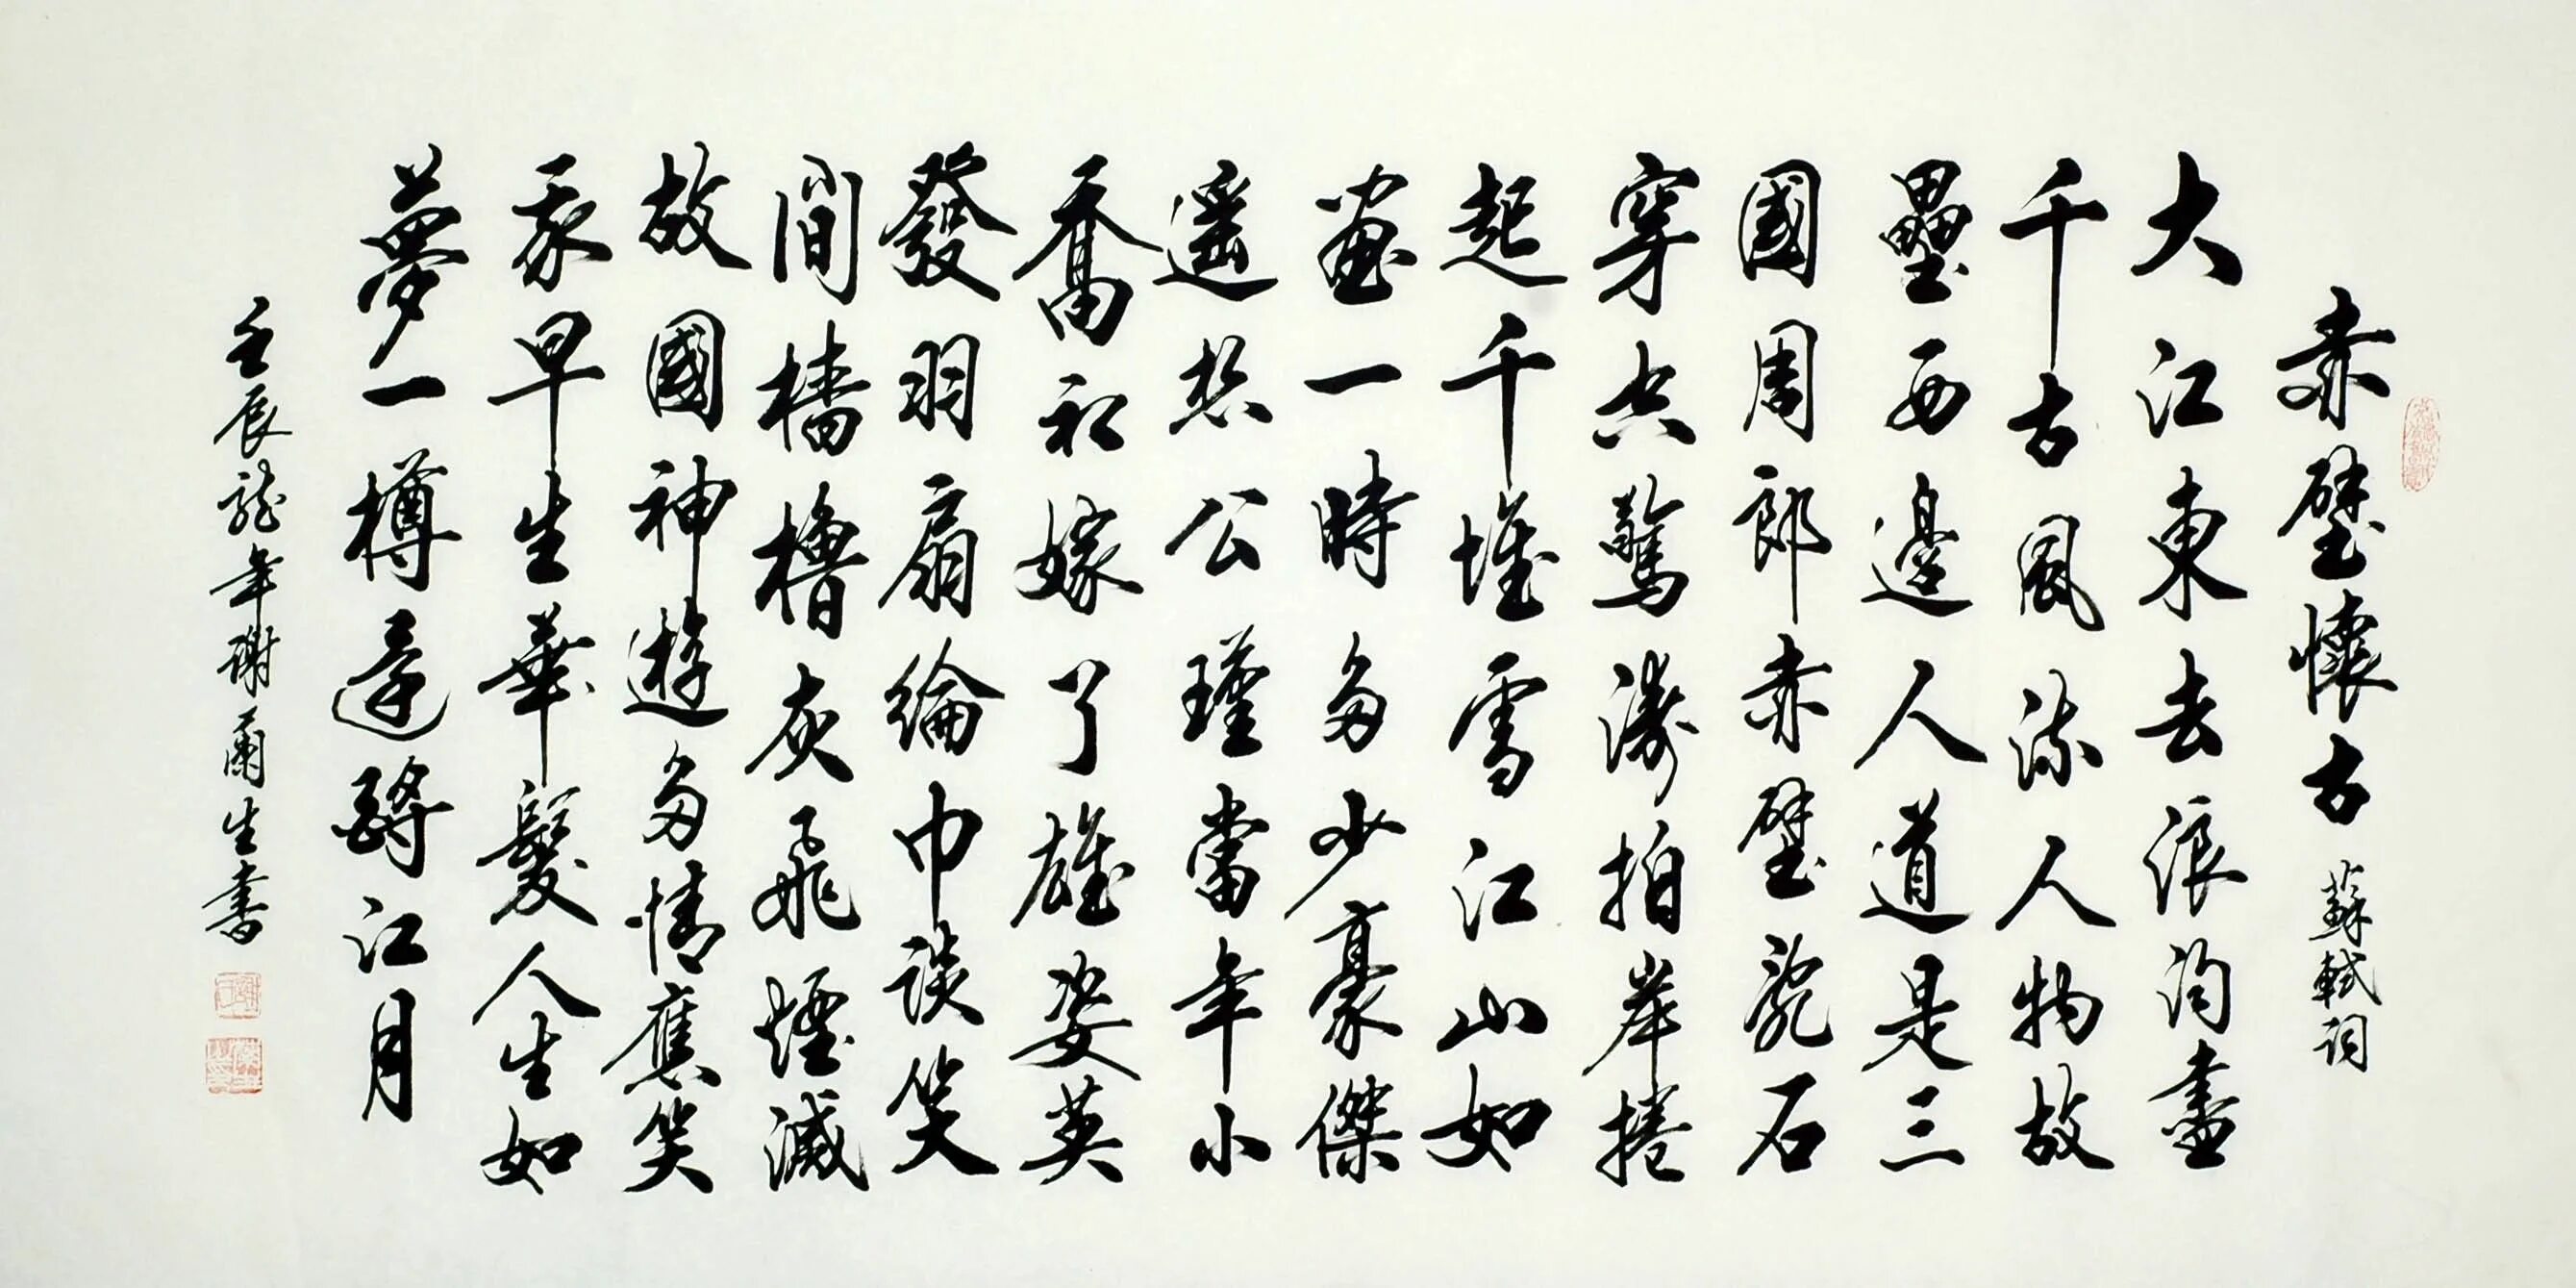 Китайская каллиграфия кайшу. Синшу каллиграфия. Каллиграфия Средневековая китайская. Китайская письменность иероглифы. Тексты древнего китая